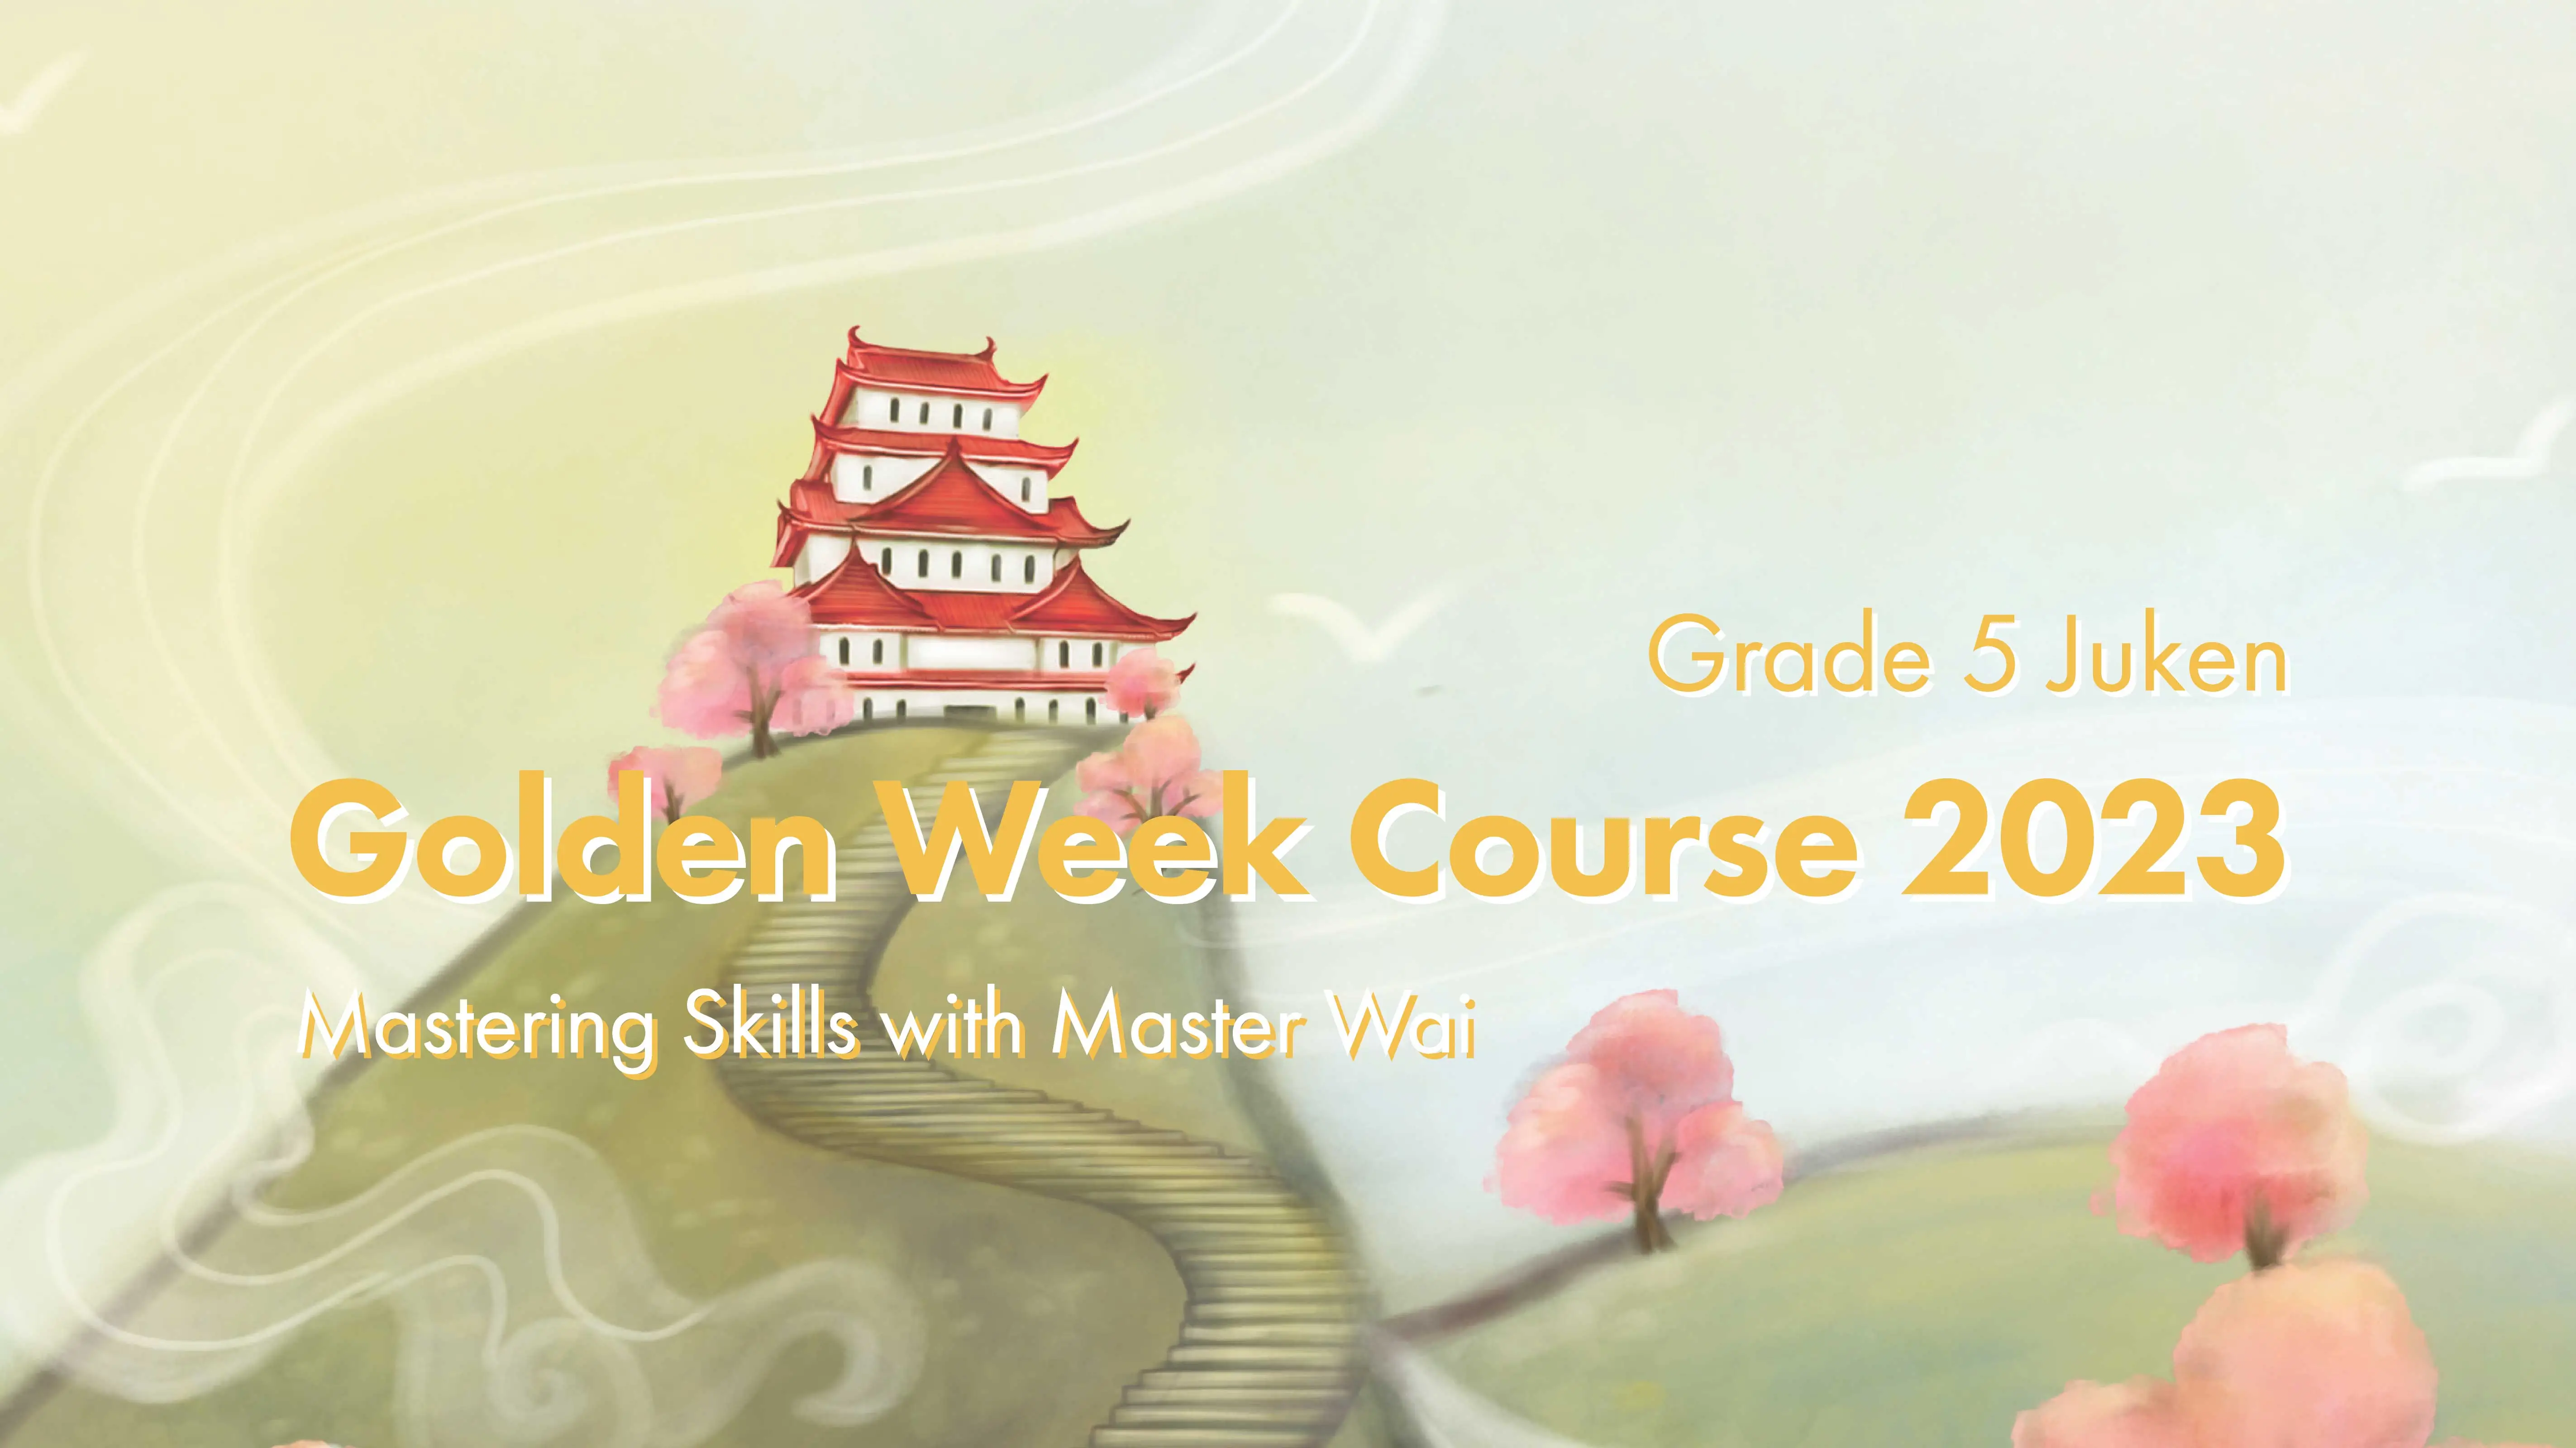 Grade 5 Juken: Golden Week Course 2023